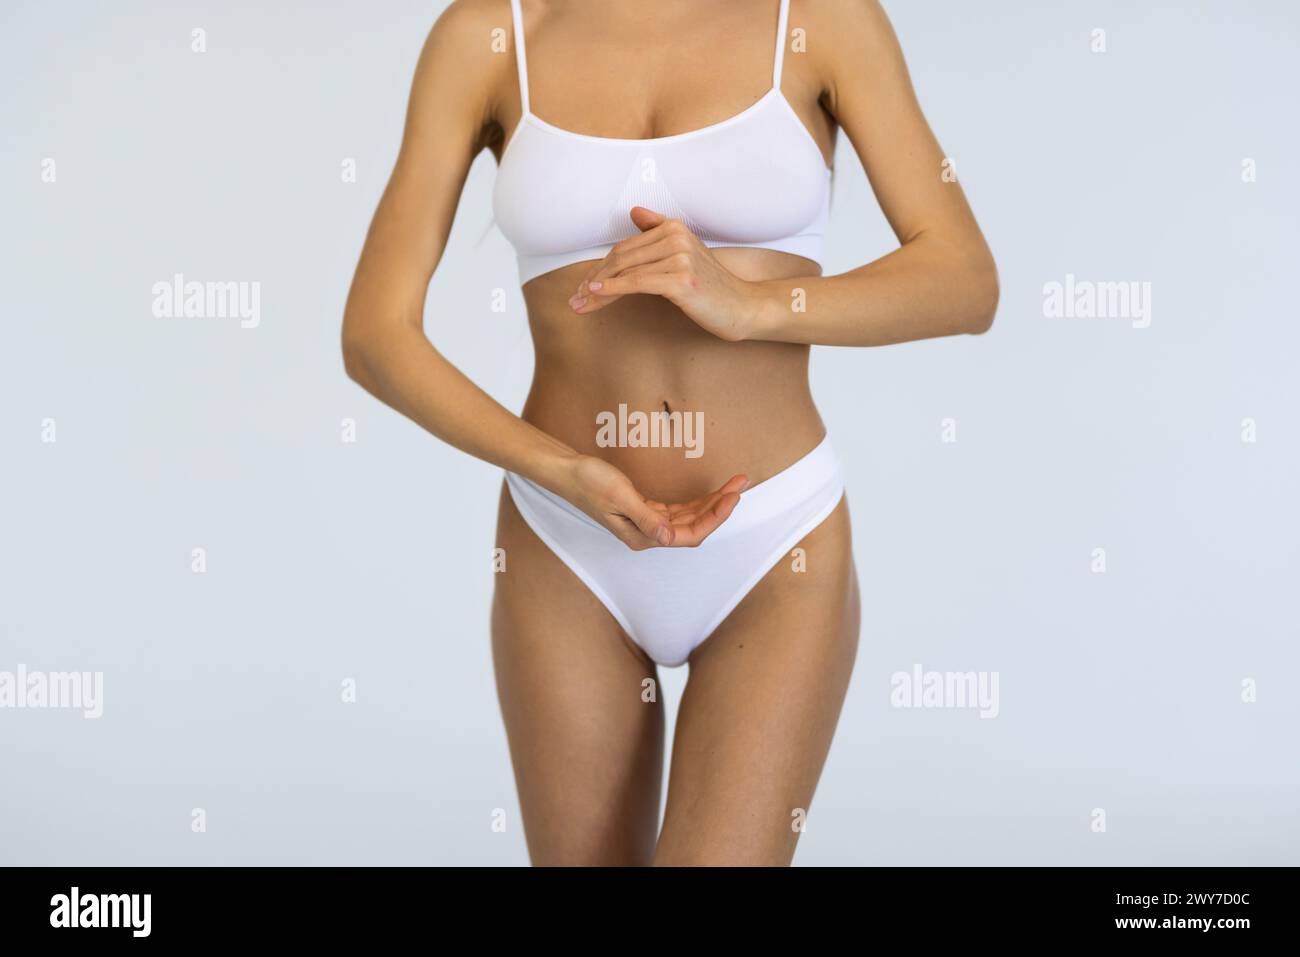 Régime. Image recadrée d'un corps féminin mince et sain, sein, ventre sur fond gris de studio. Mannequin posant en sous-vêtements blancs. Concept de corps et SK Banque D'Images